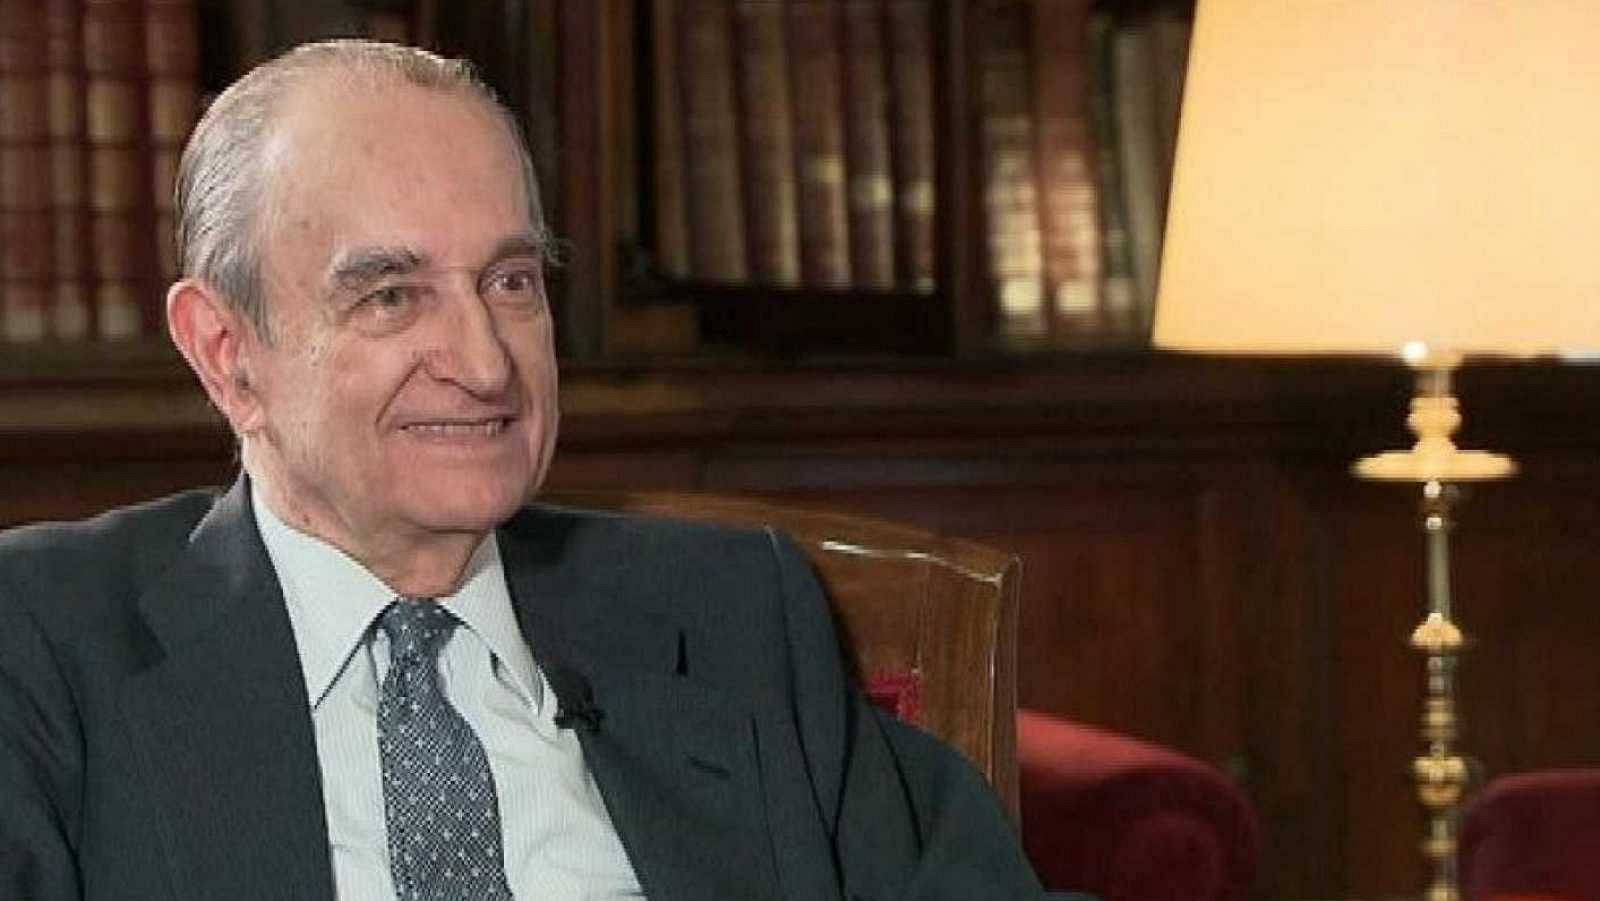  Fallece Landelino Lavilla, ministro de Justicia con Suárez y presidente del Congreso durante el 23-F - RTVE.es